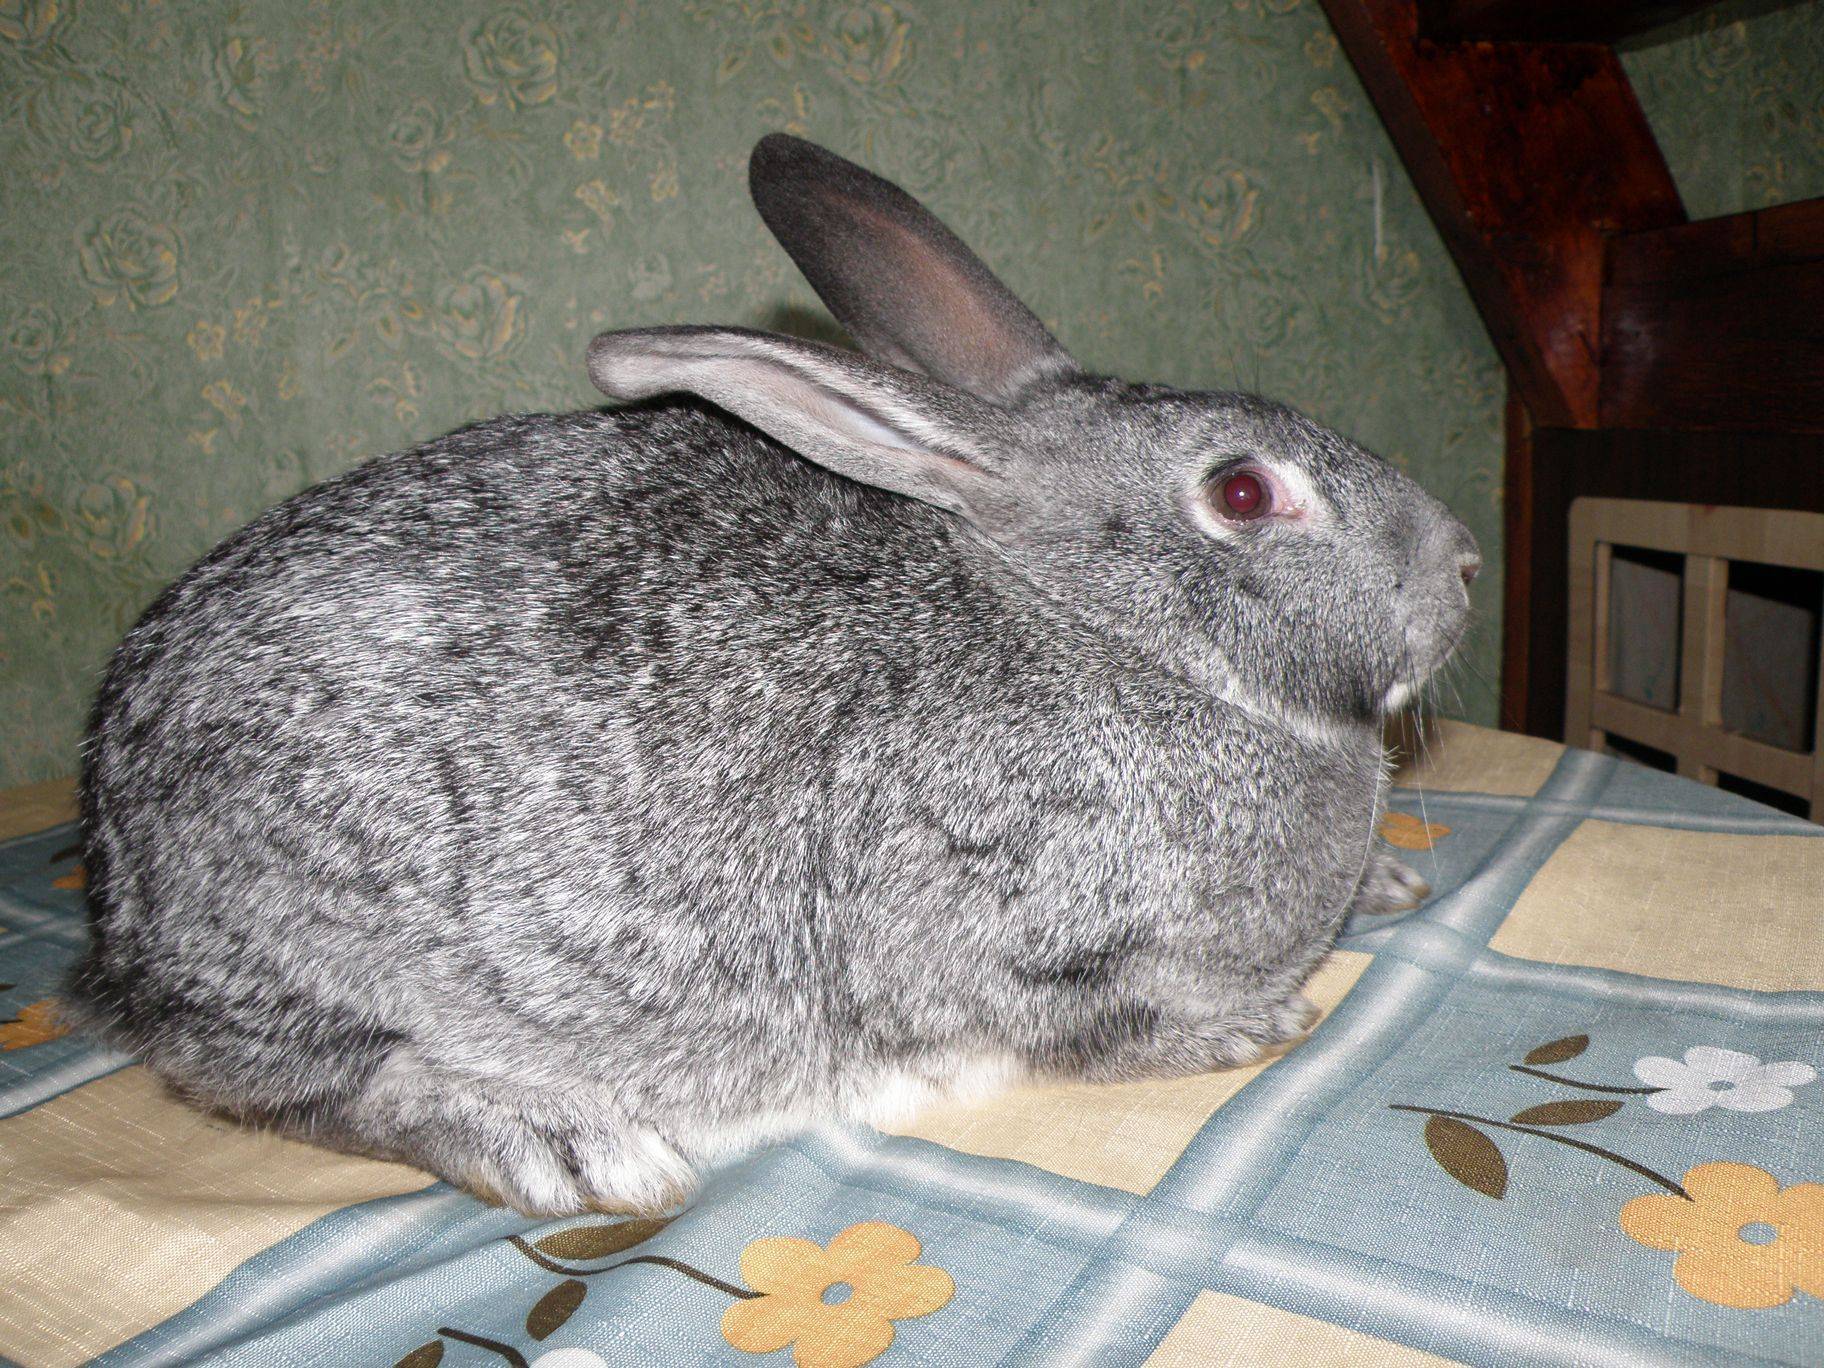 Кролик шиншилла (советская): описание и характеристика породы